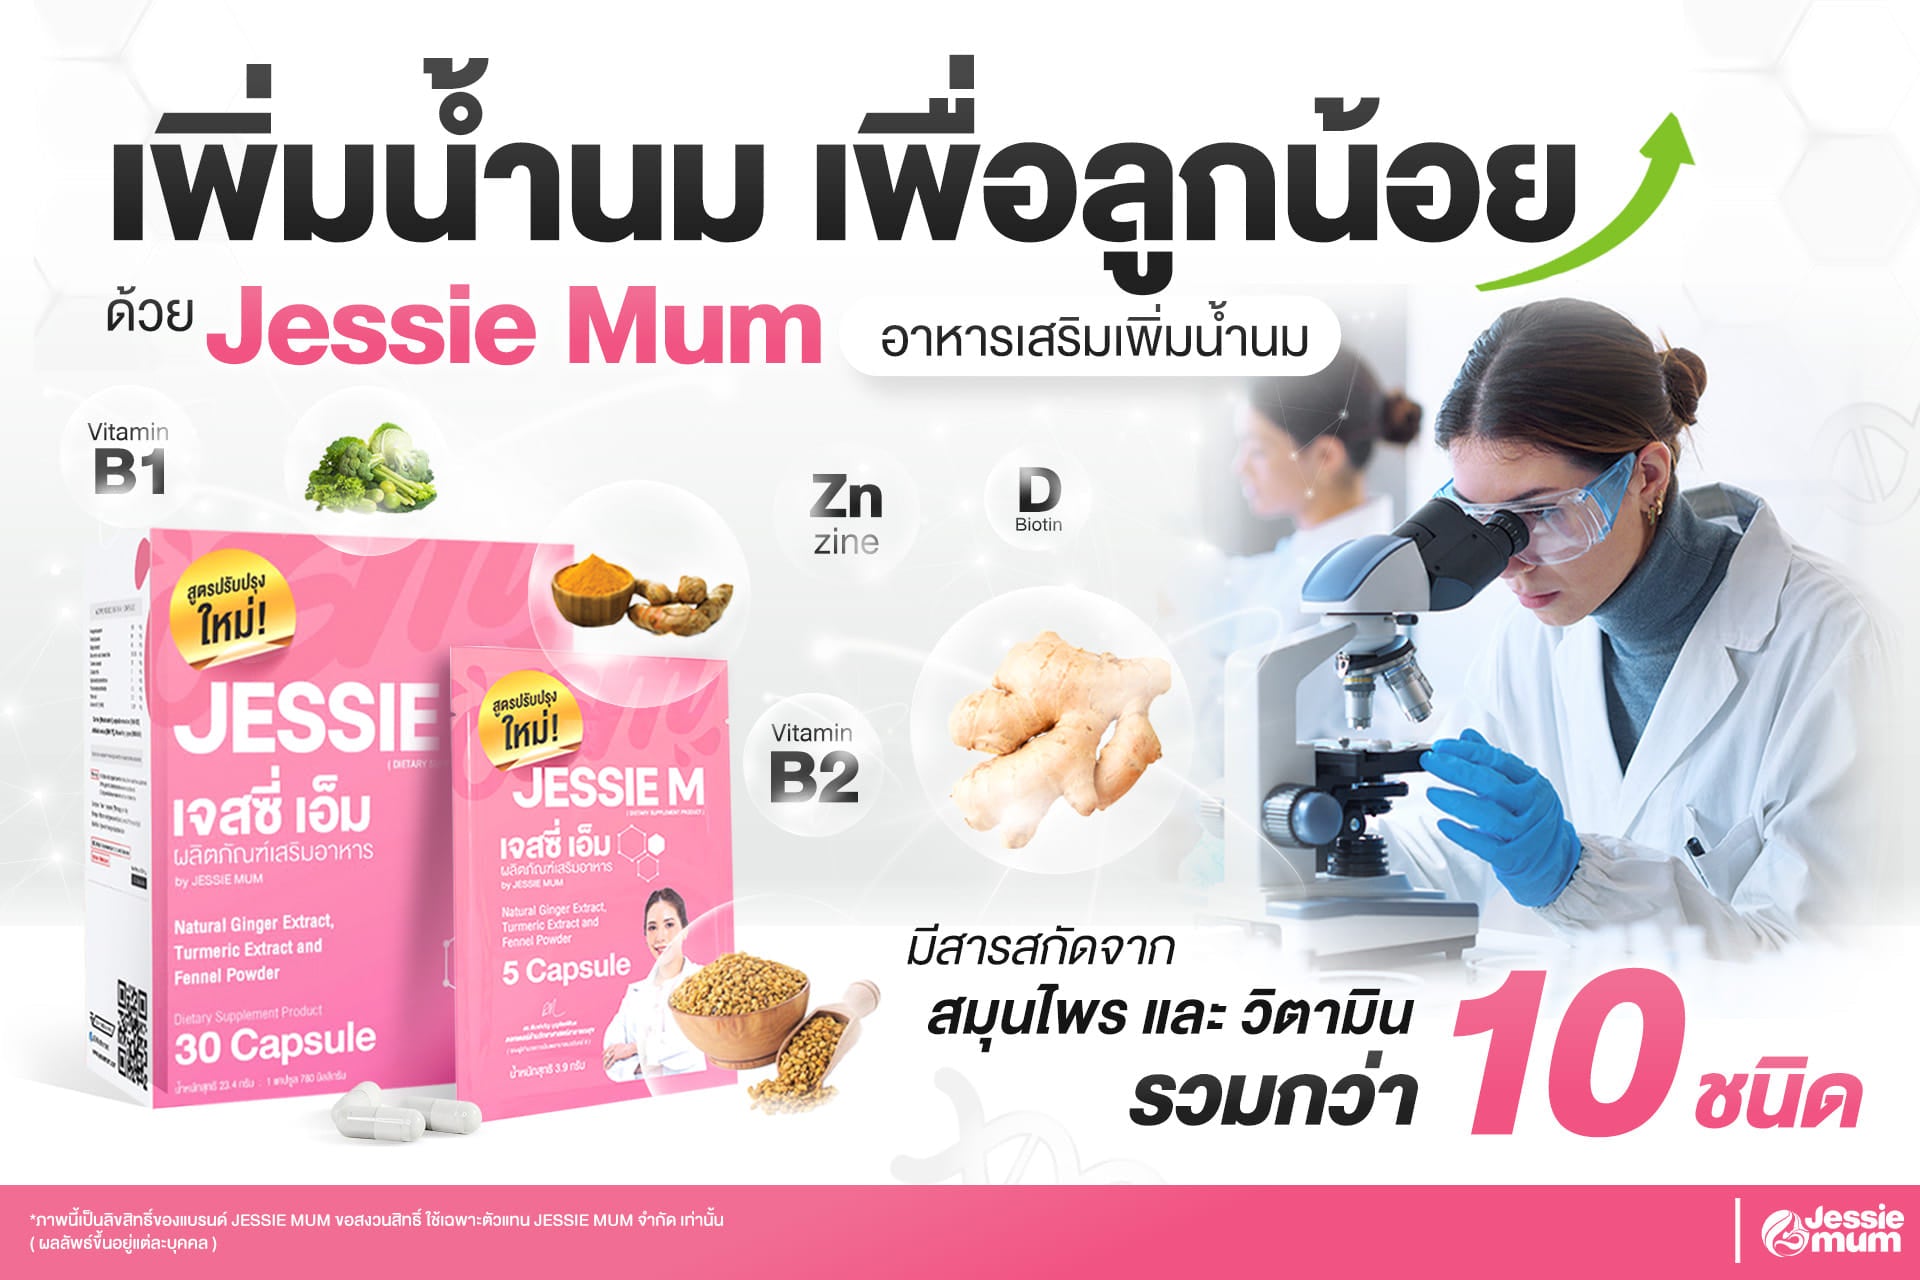 โหลดวิดีโอ: Jessie Mum Breastfeeding Supplement : High Quality Production - ดูแลการผลิตโดยผู้เชี่ยวชาญทุกขั้นตอน